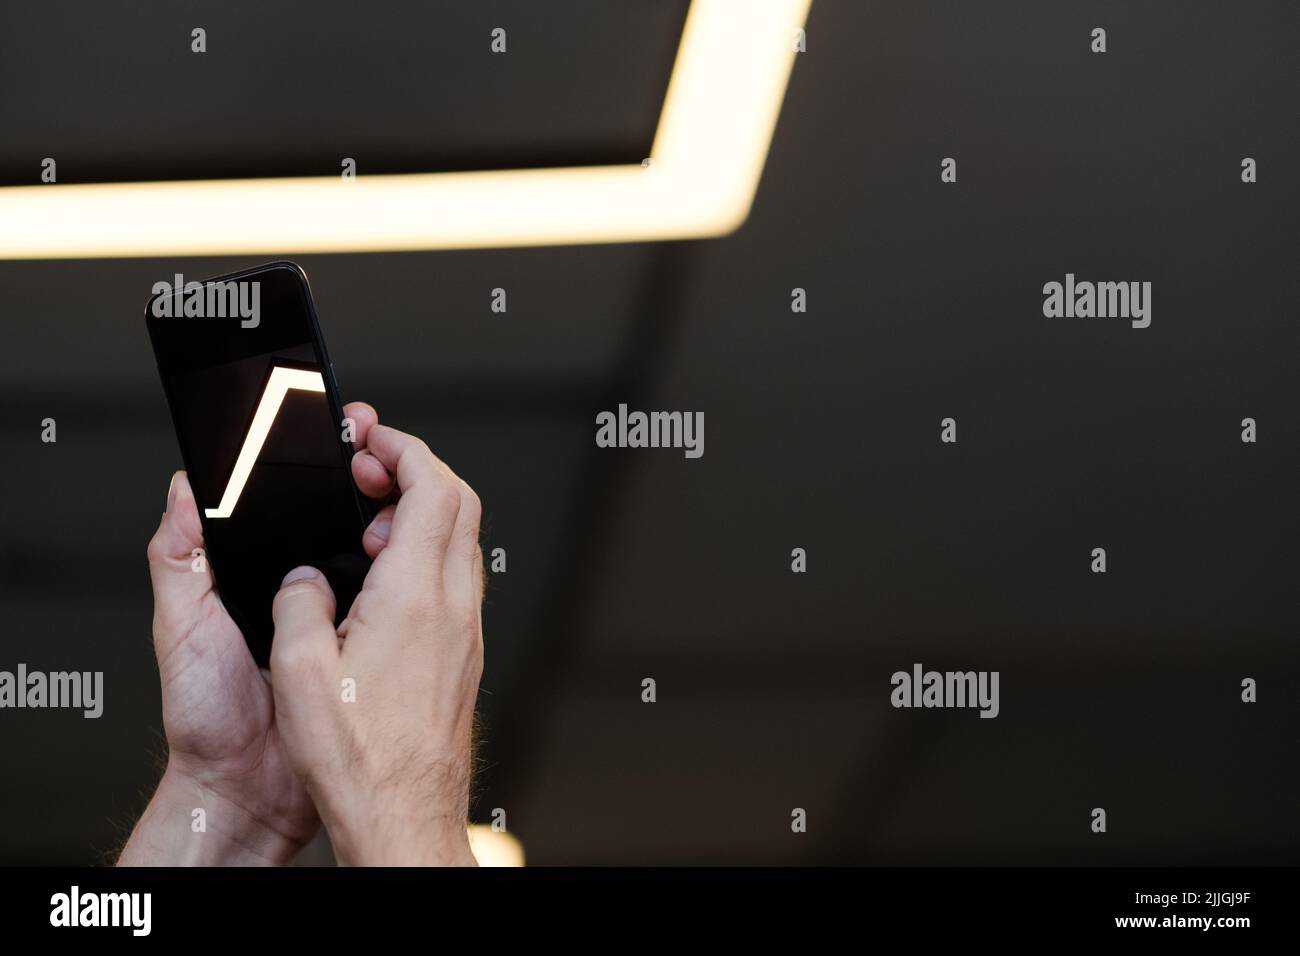 illuminazione dei binari della fotocamera dello smartphone illuminata Foto Stock